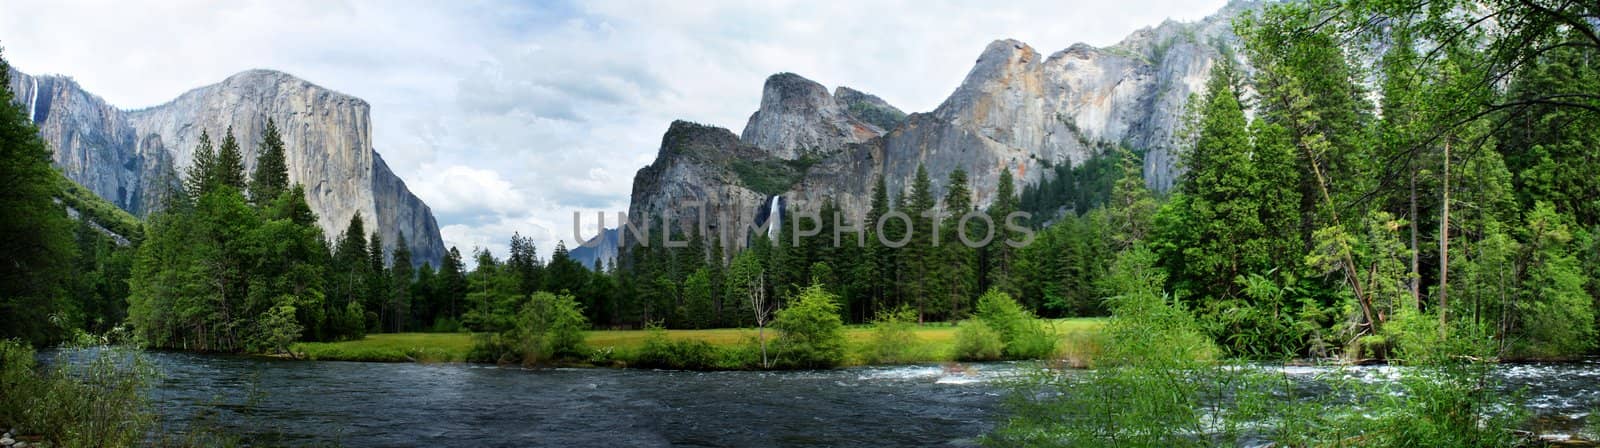 El Capitan Yosemite Nation Park by hlehnerer